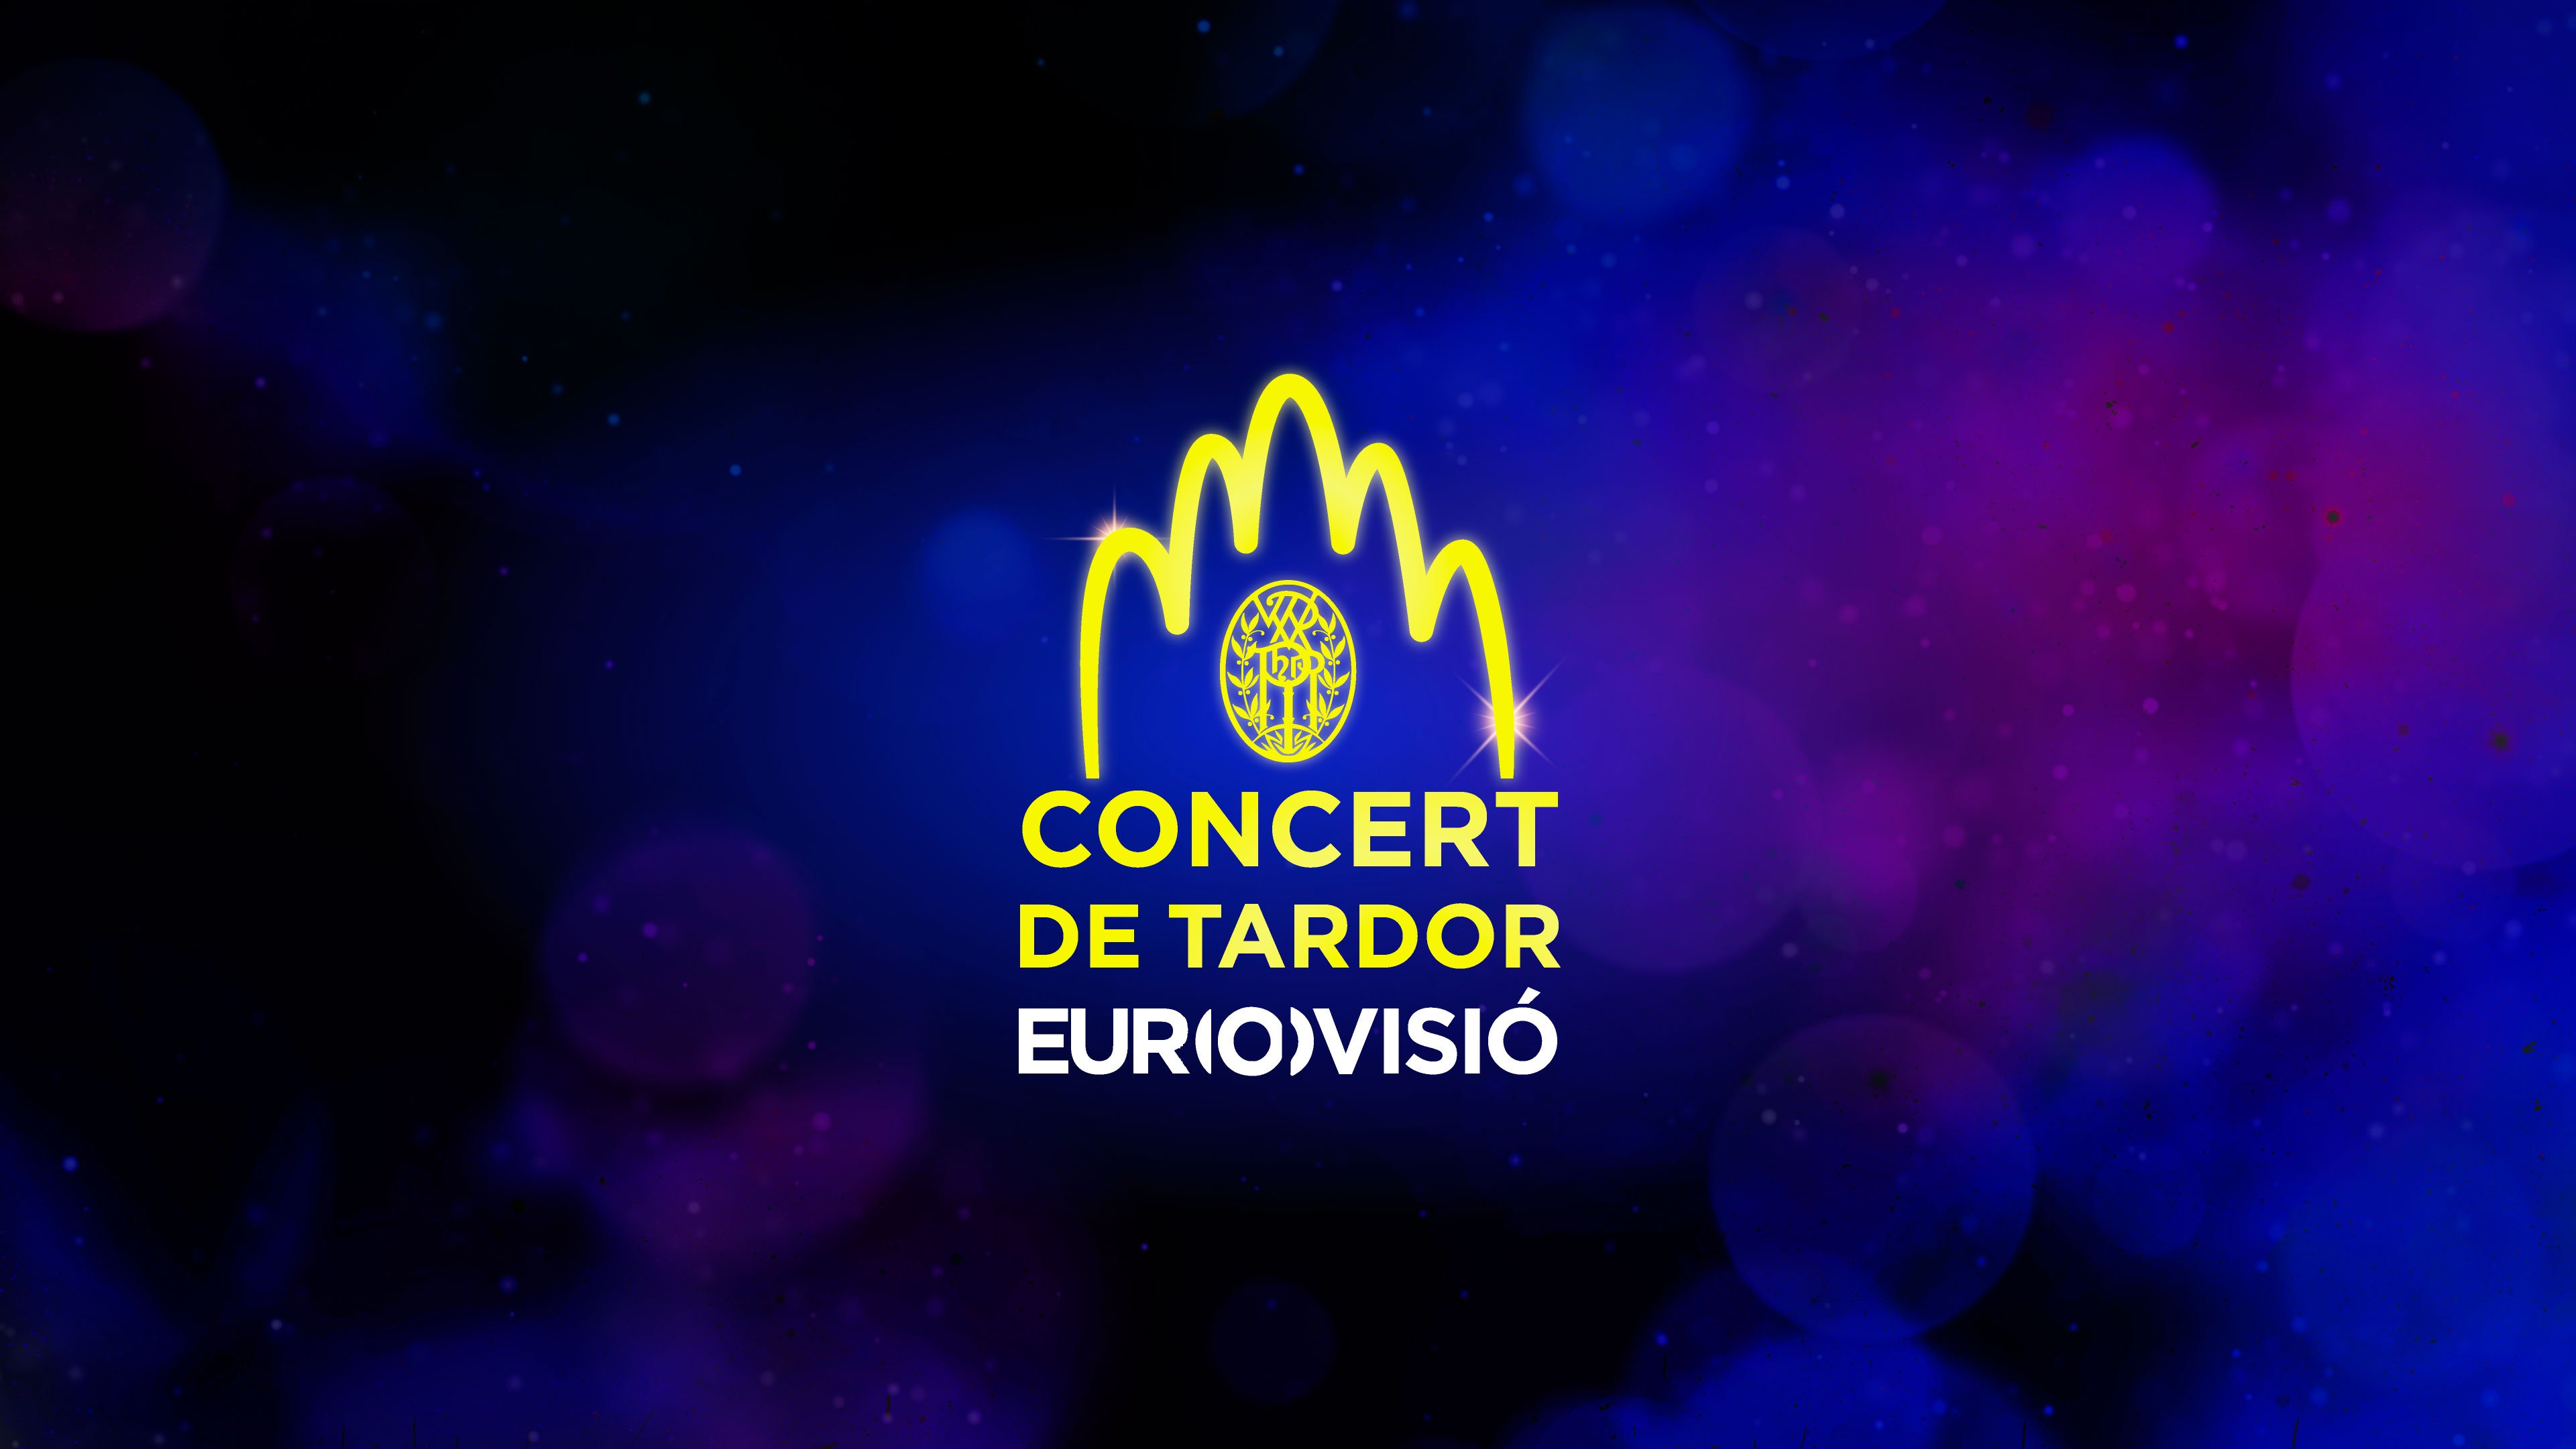 La UER celebrarà el 13 de setembre el Concert de Tardor d’Eurovisió a la Sagrada Família